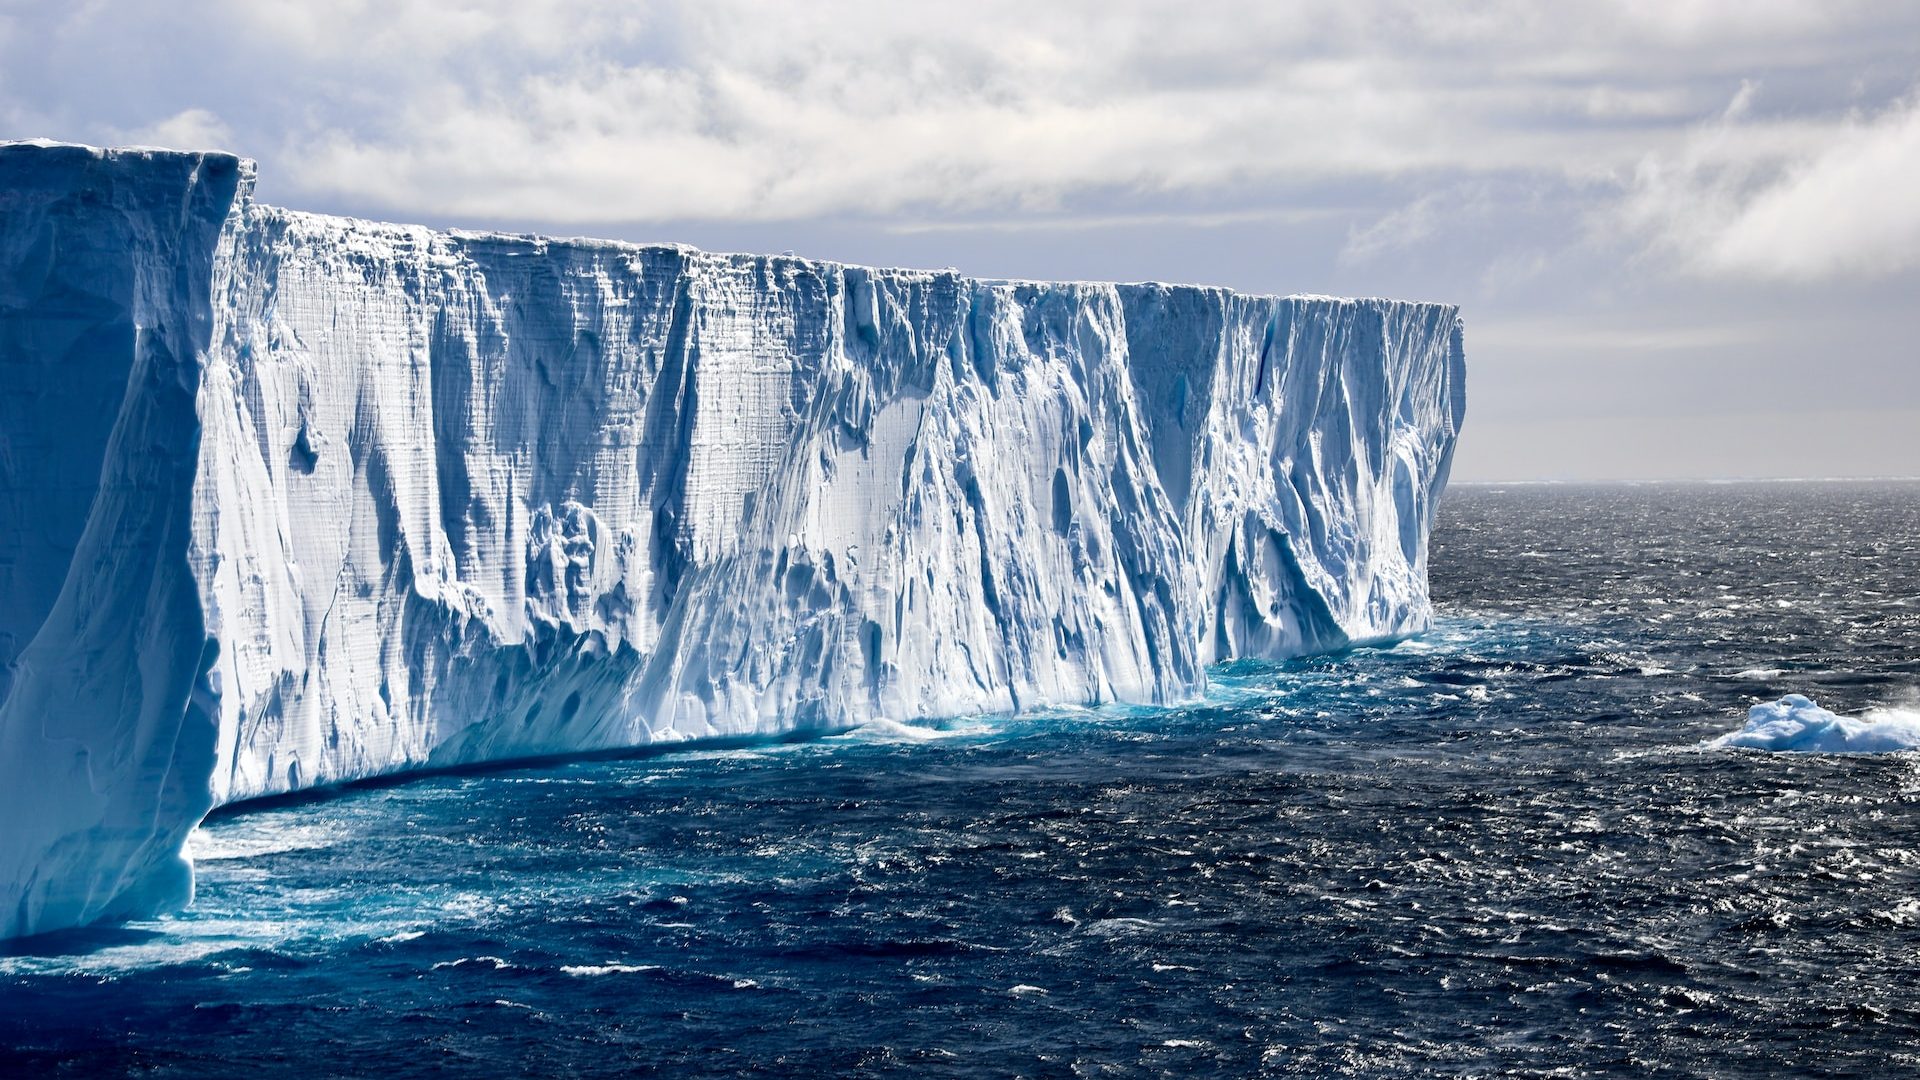 Rinnovabili • Fusione ghiacciai Antartide: un meccanismo la accelera del 15%